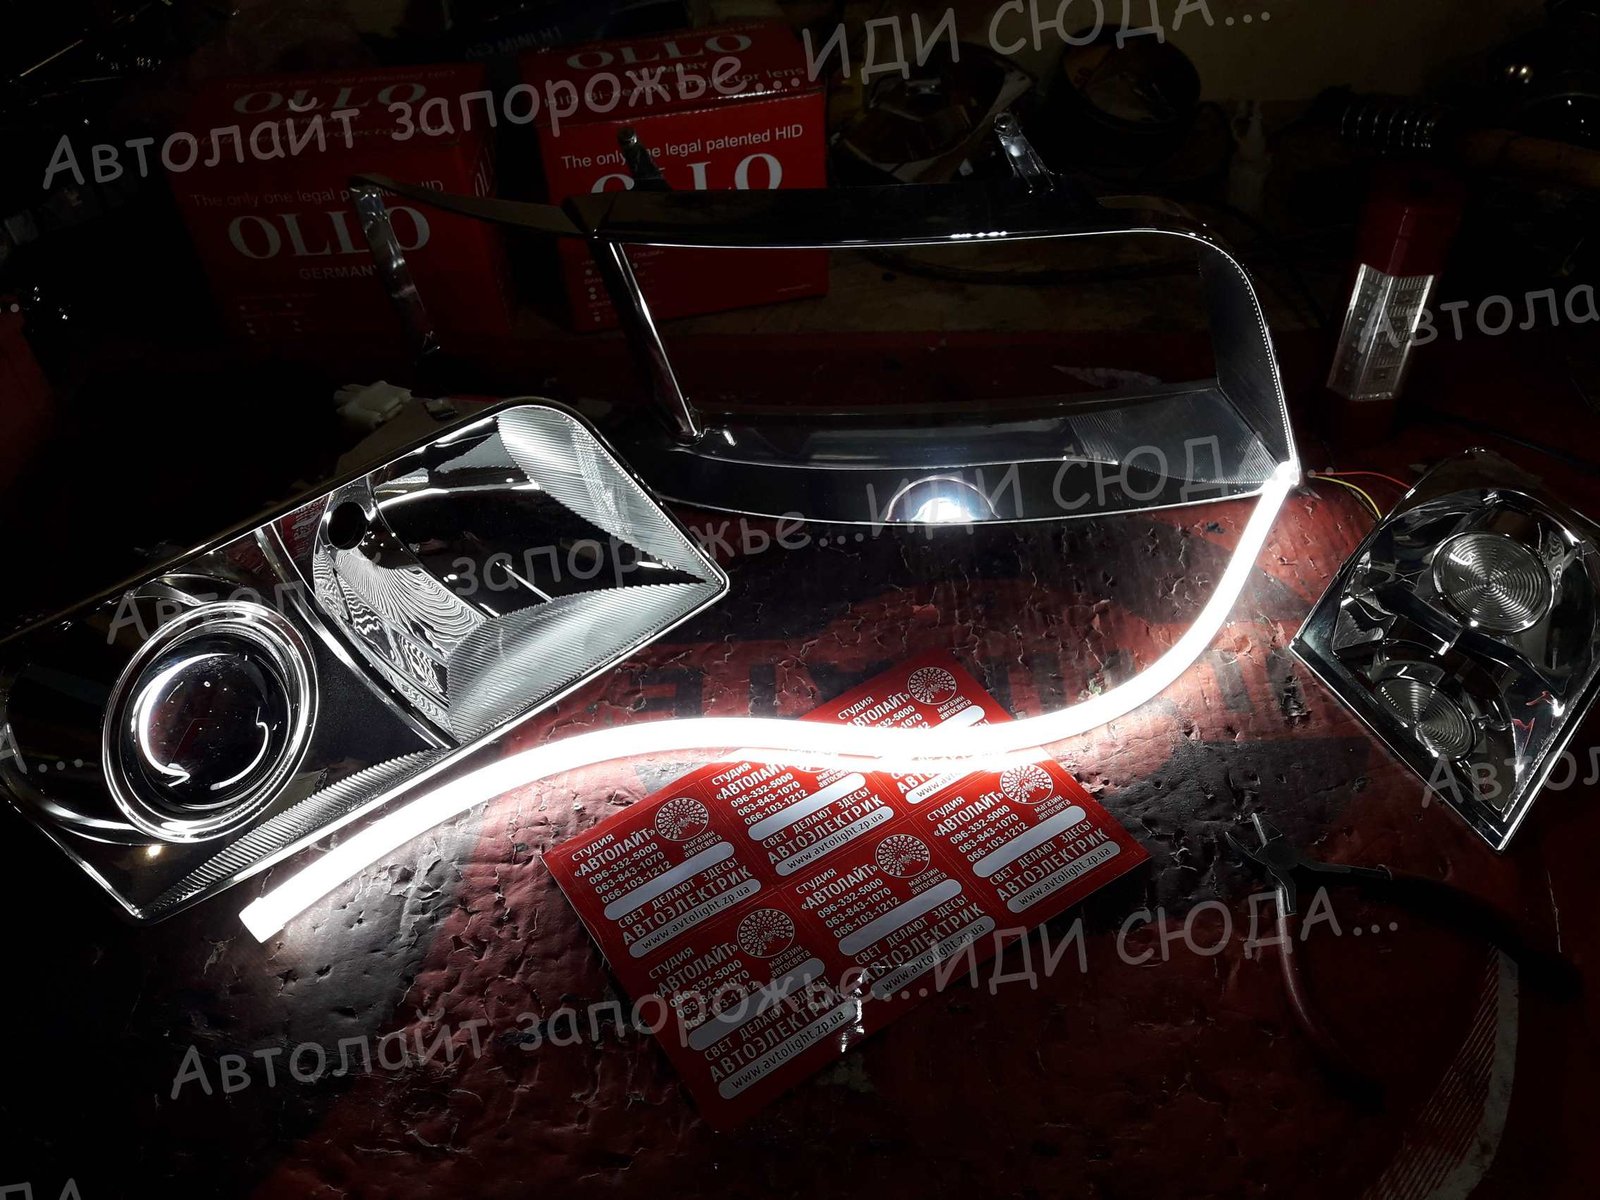 Фотогалерея автосвет 25 🚩AVTOLIGHT🚩КАЧЕСТВО 💯‼ студия "Автолайт" Качественный автосвет в Запорожье